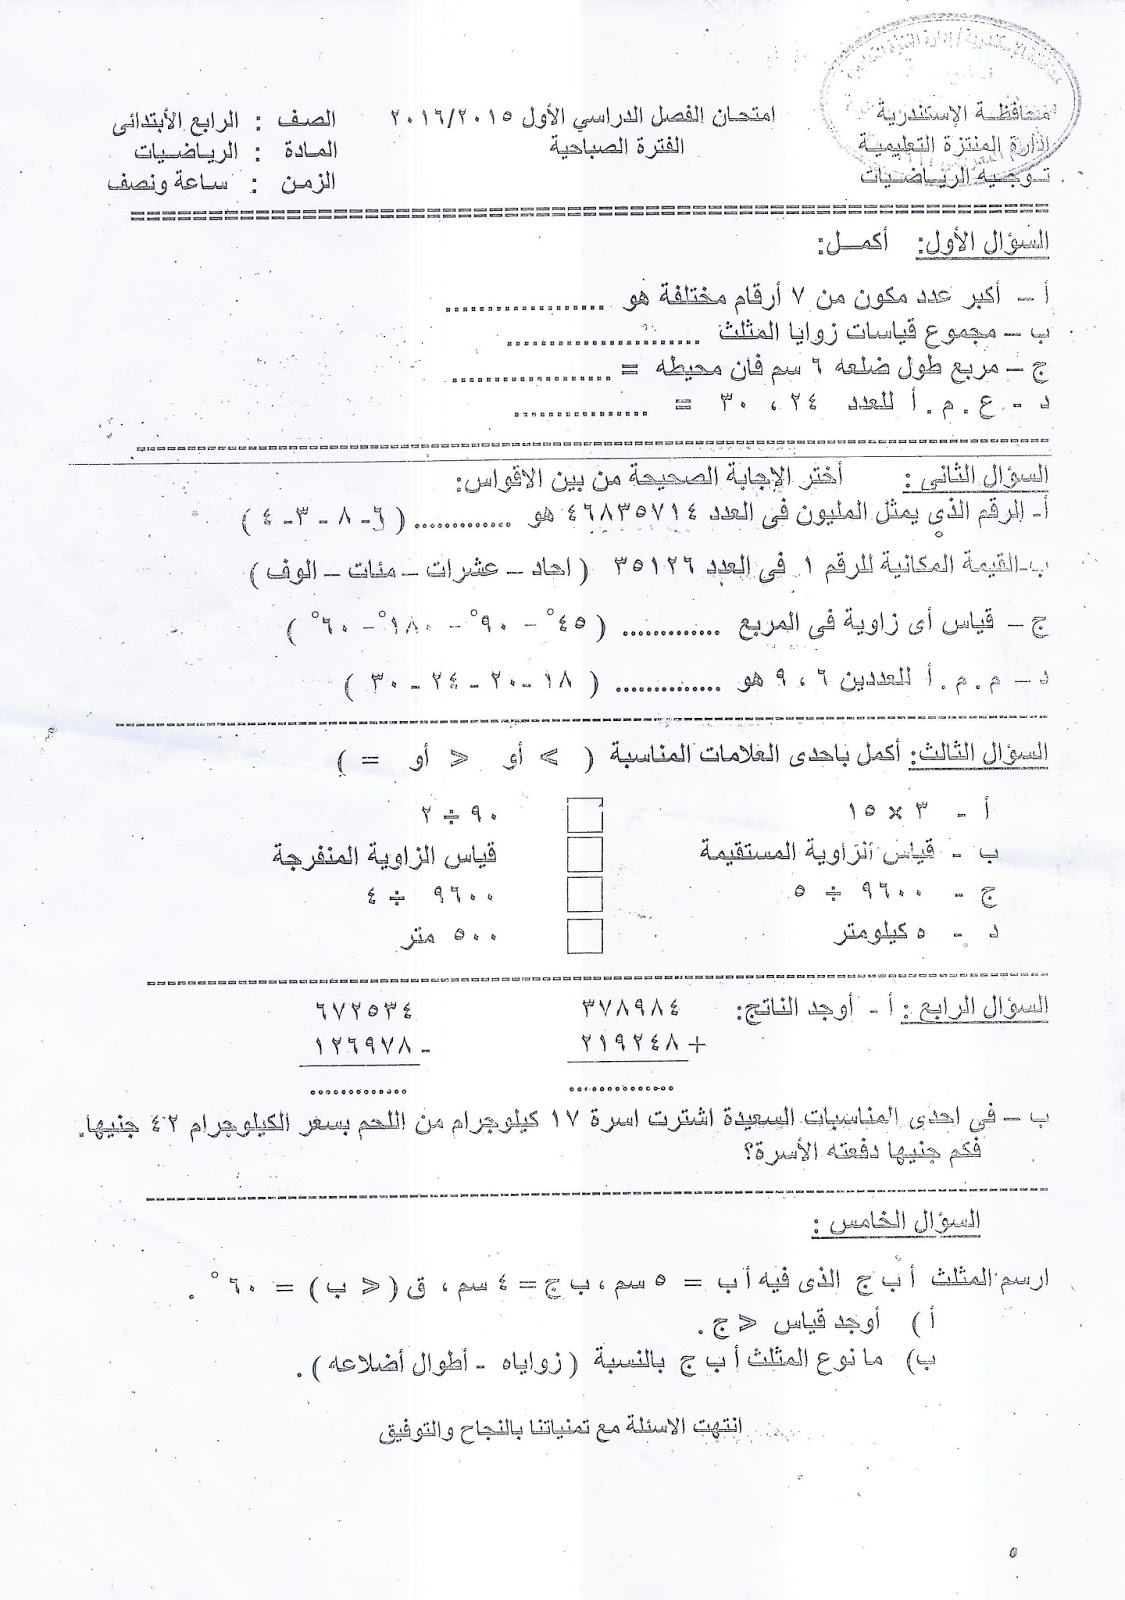  محافظة الاسكندرية: امتحان الرياضيات رابعة ابتدائي نصف العام 2016 Scan0016